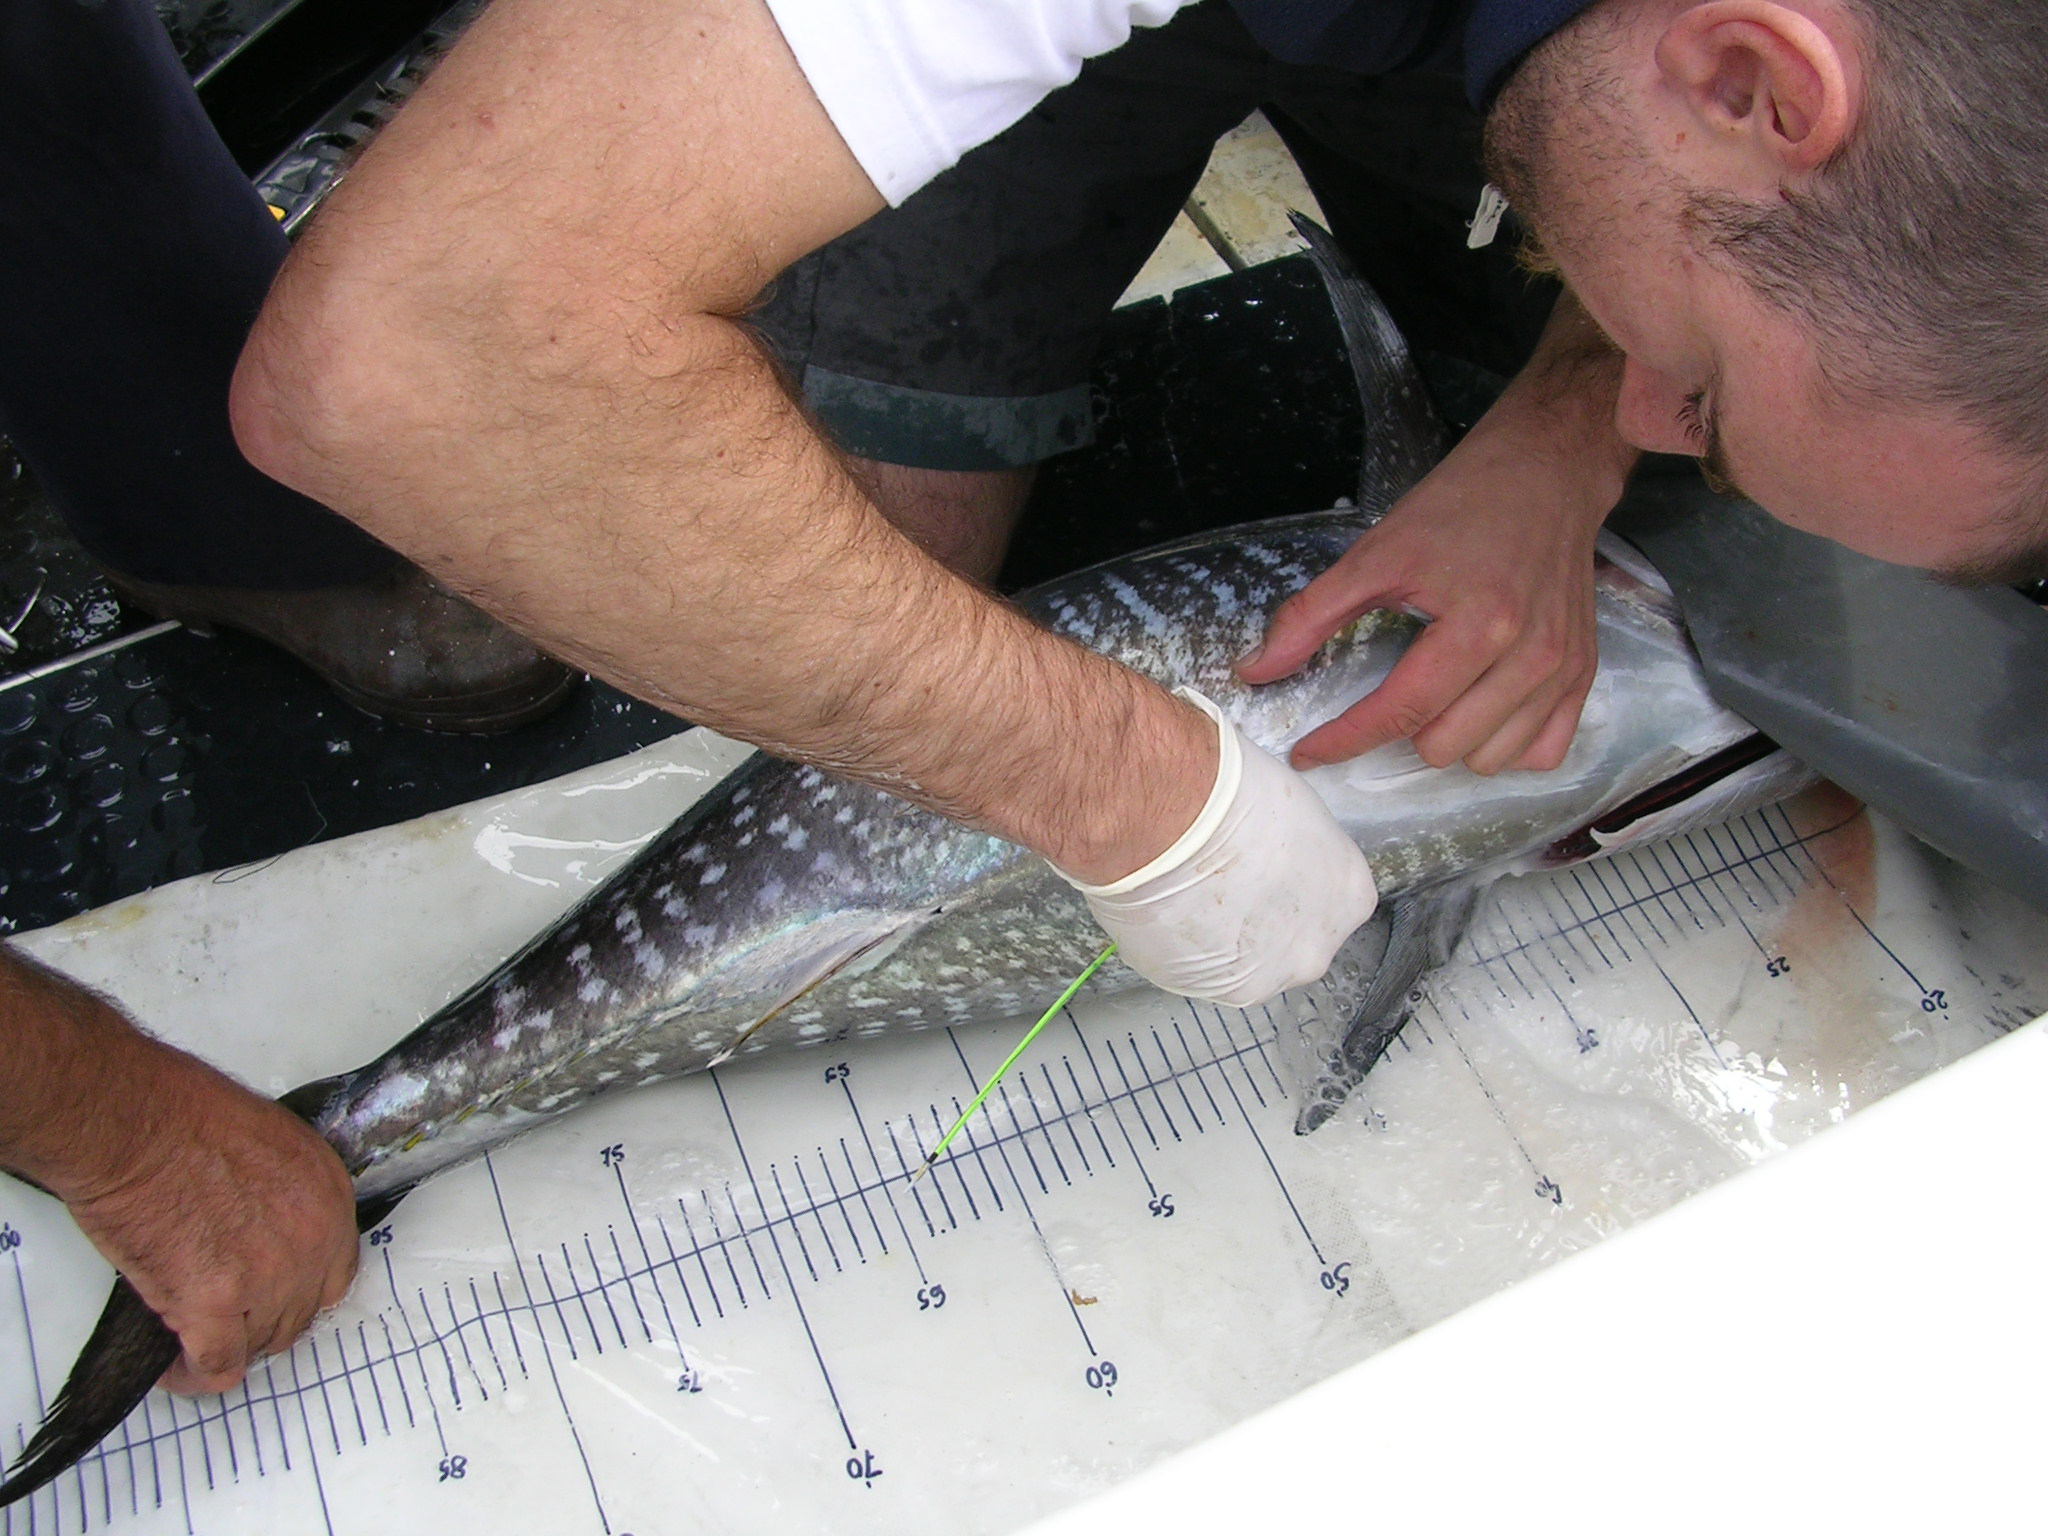 Les balises fournies par le centre de recherche basque Atzi-Tecnalia sont fixées sur la nageoire dorsale du thon. Les scientifiques forment et encouragent les plaisanciers à poser des balises sur certains thons durant leurs journées de pêche. © Azti-Tecnalia